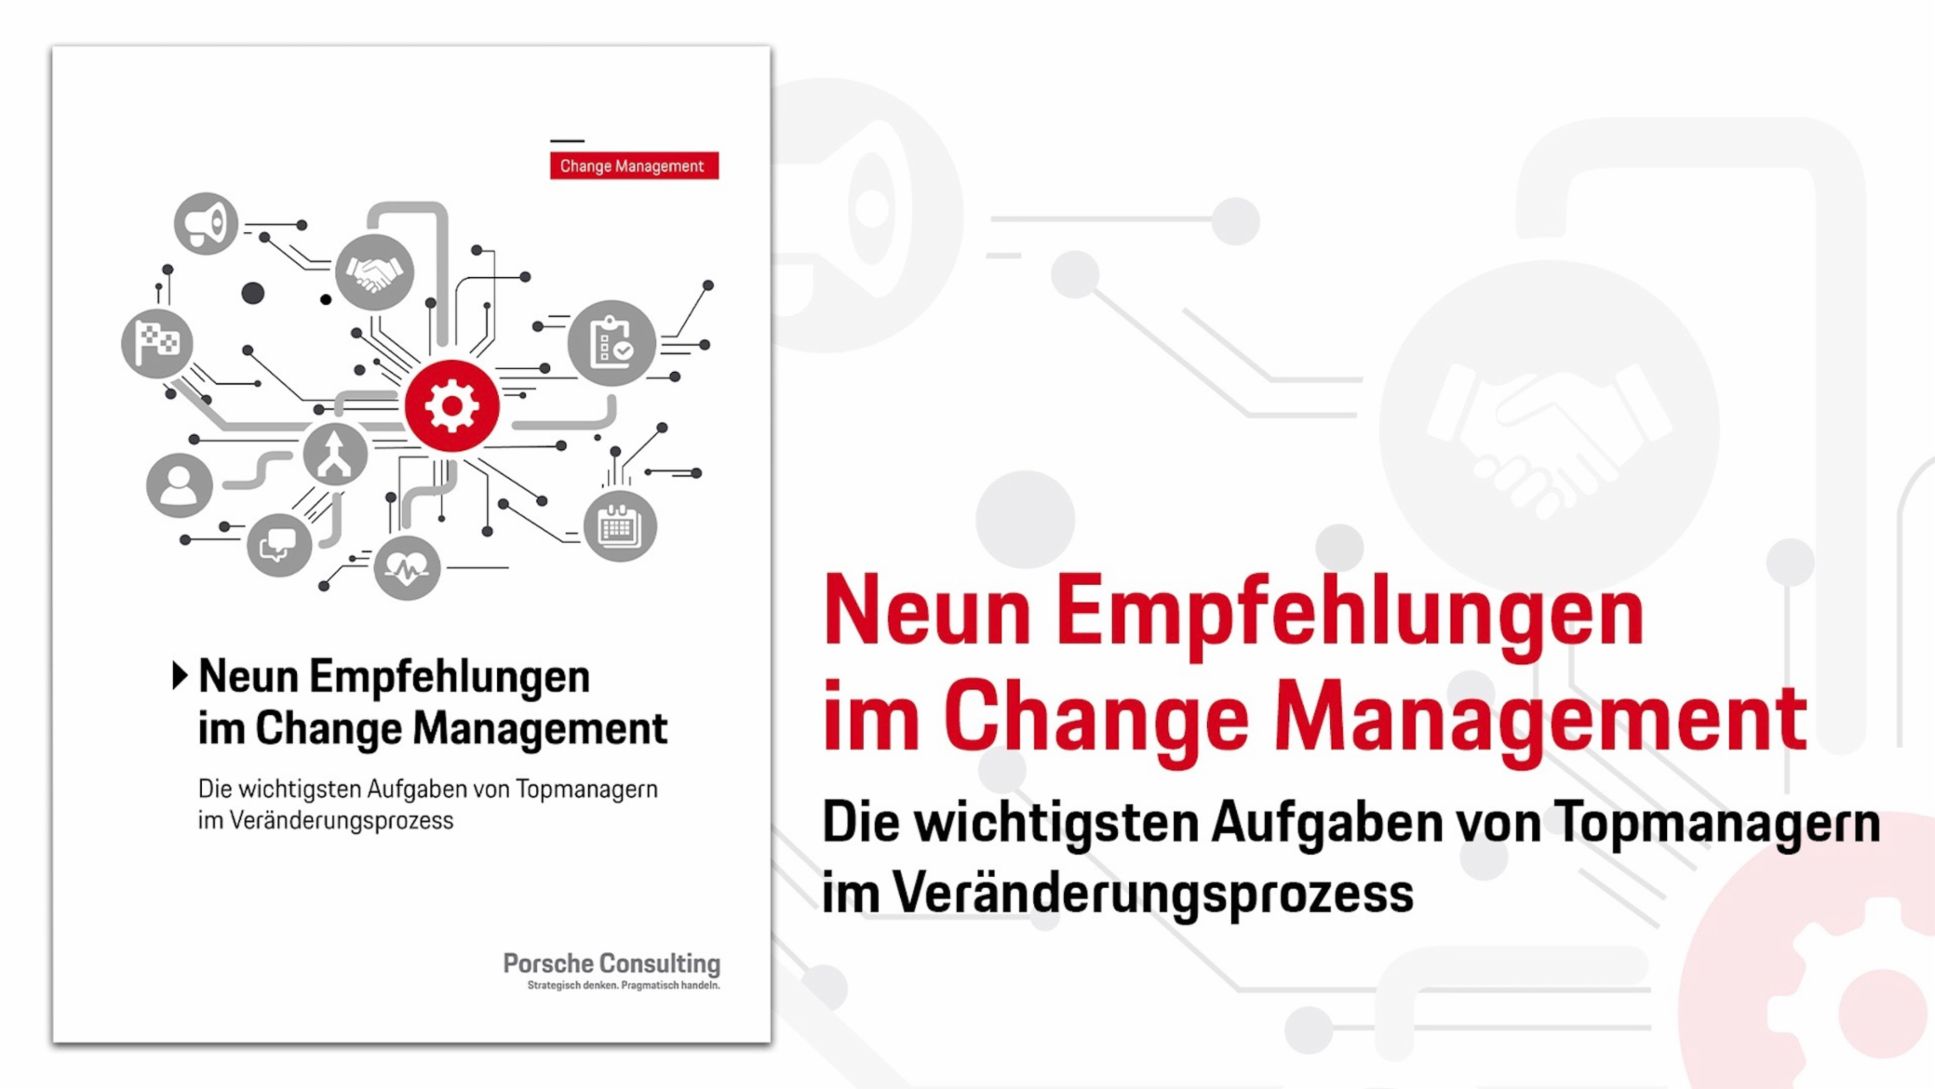 Neun Empfehlungen im Change Management, 2018, Porsche Consulting